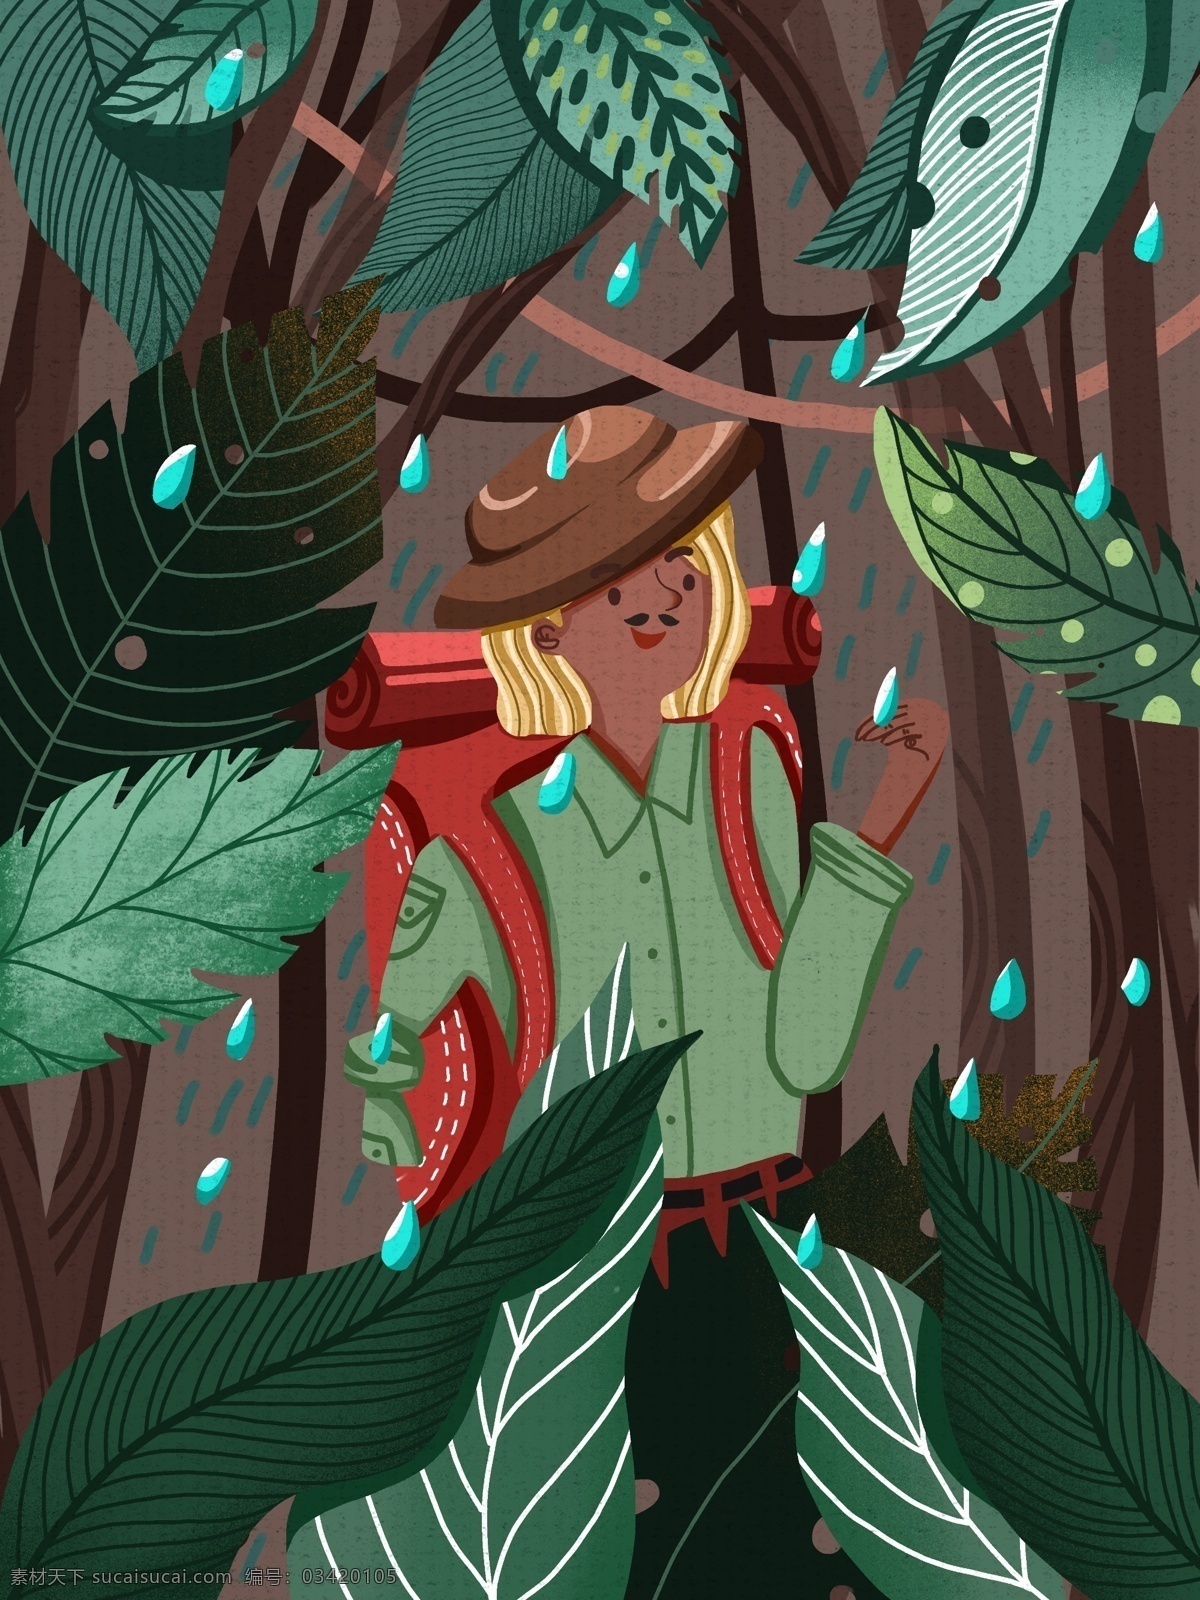 国际 残疾 人日 断臂 男孩 独自 去 森林 探险 可爱 帽子 树叶 树木 背包 国际残疾人日 下雨